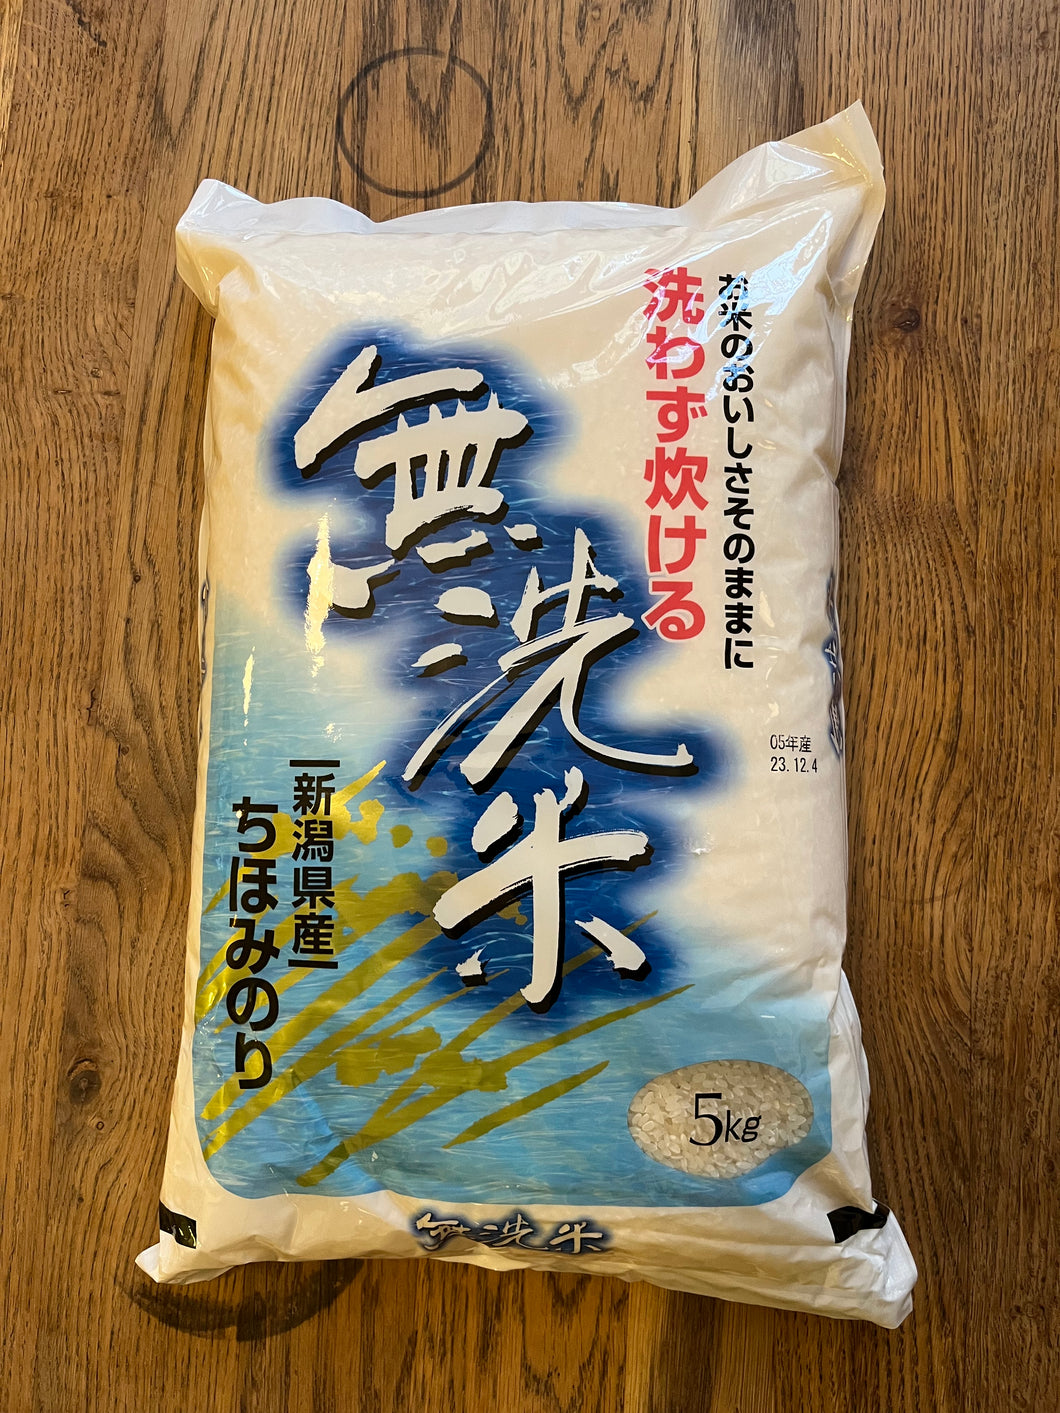 Chihominori rice (5Kg)